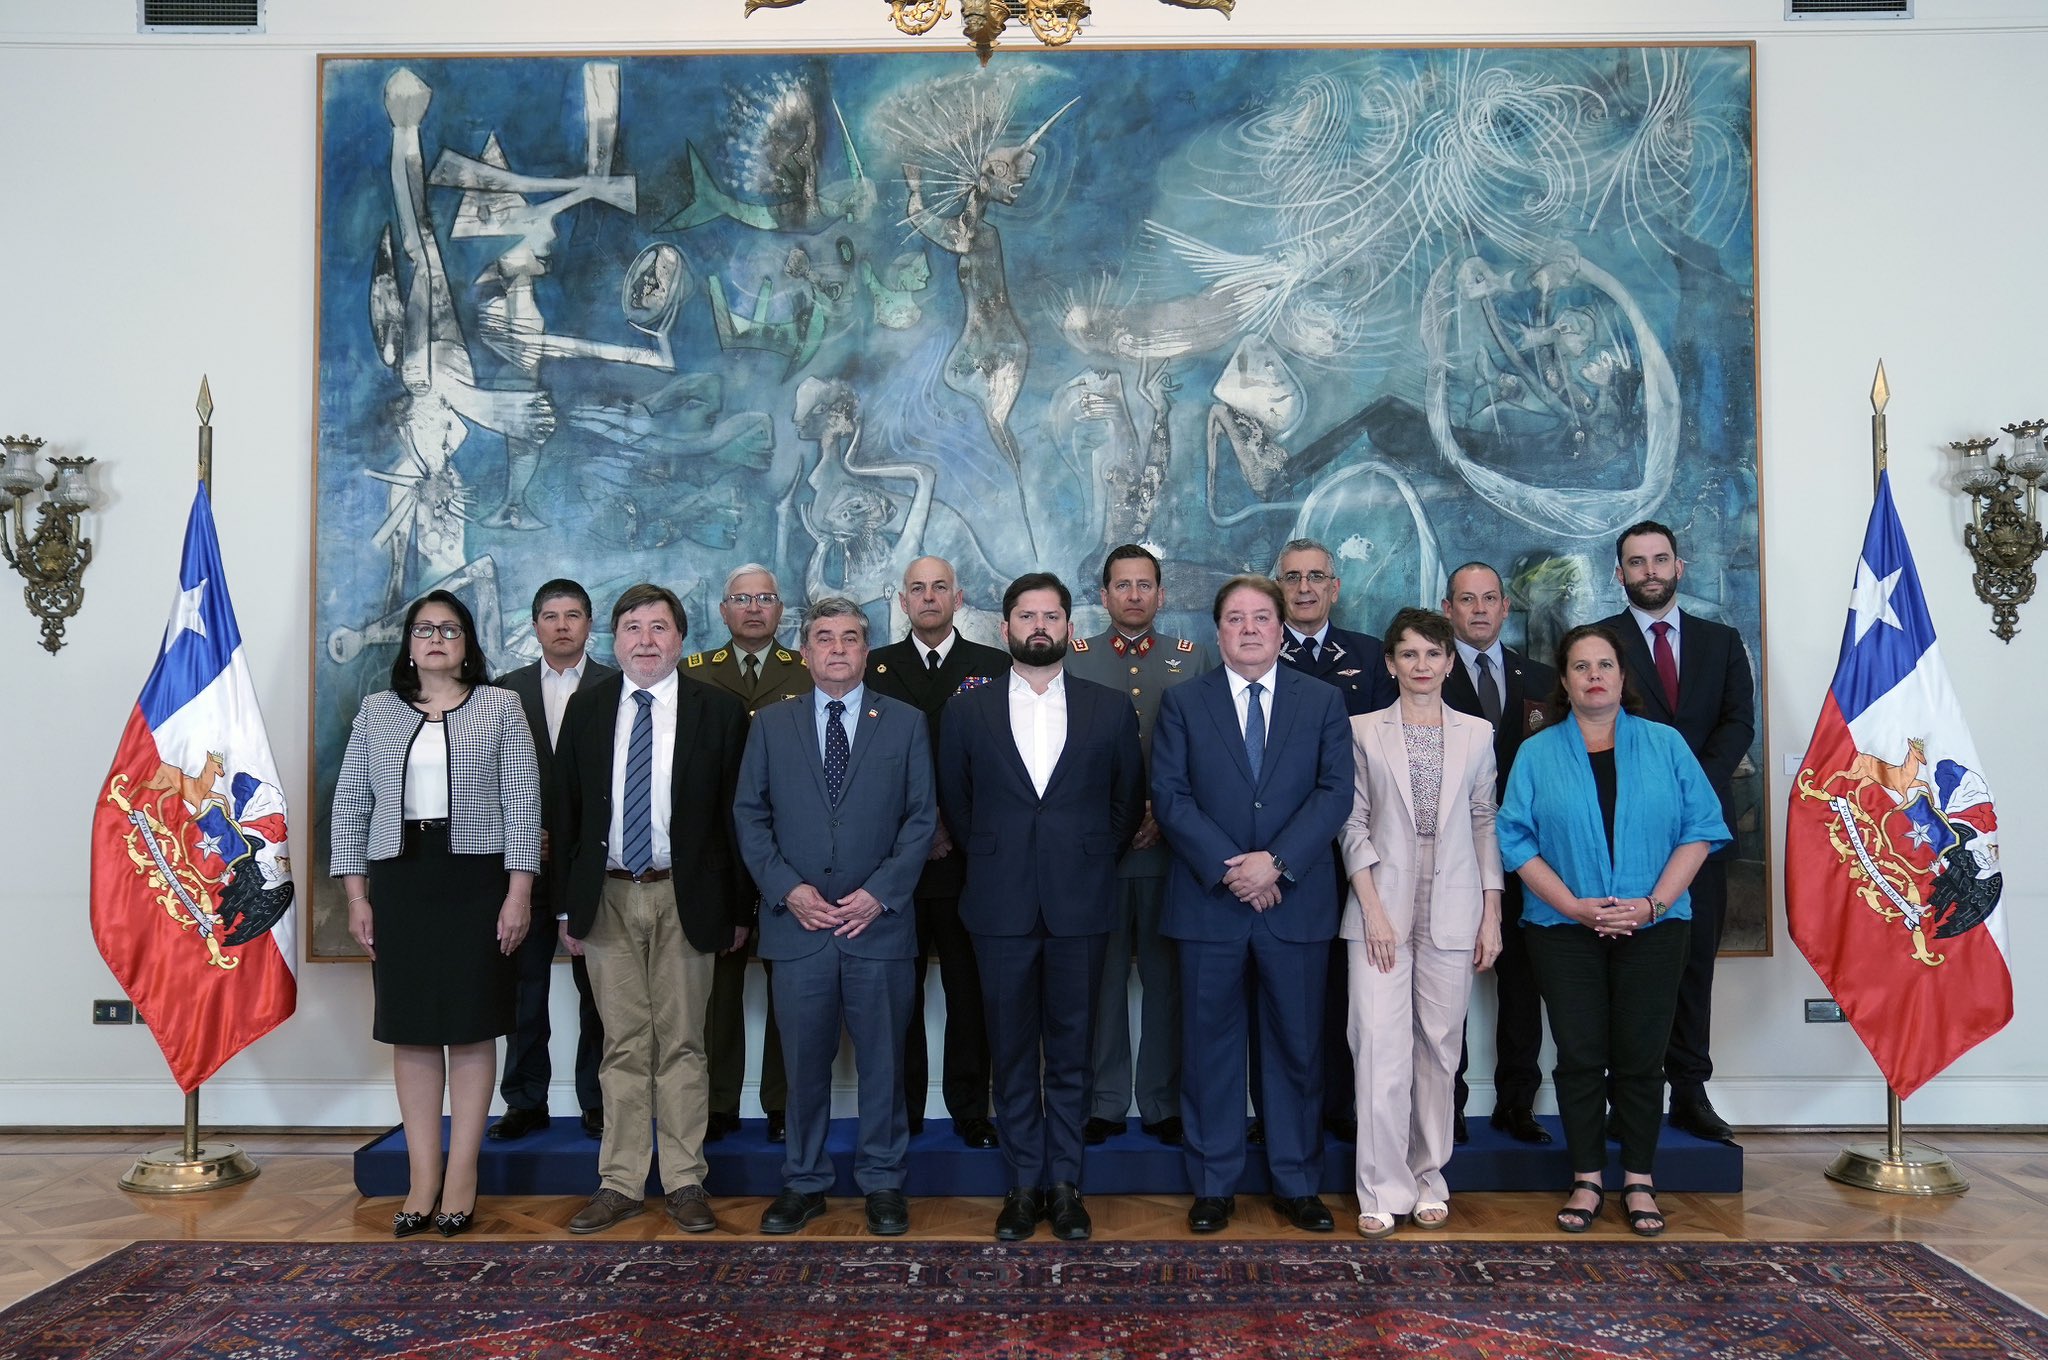 Consejo de Seguridad Nacional (Cosena) liderado por el Presidente Gabriel Boric en el Palacio de La Moneda.